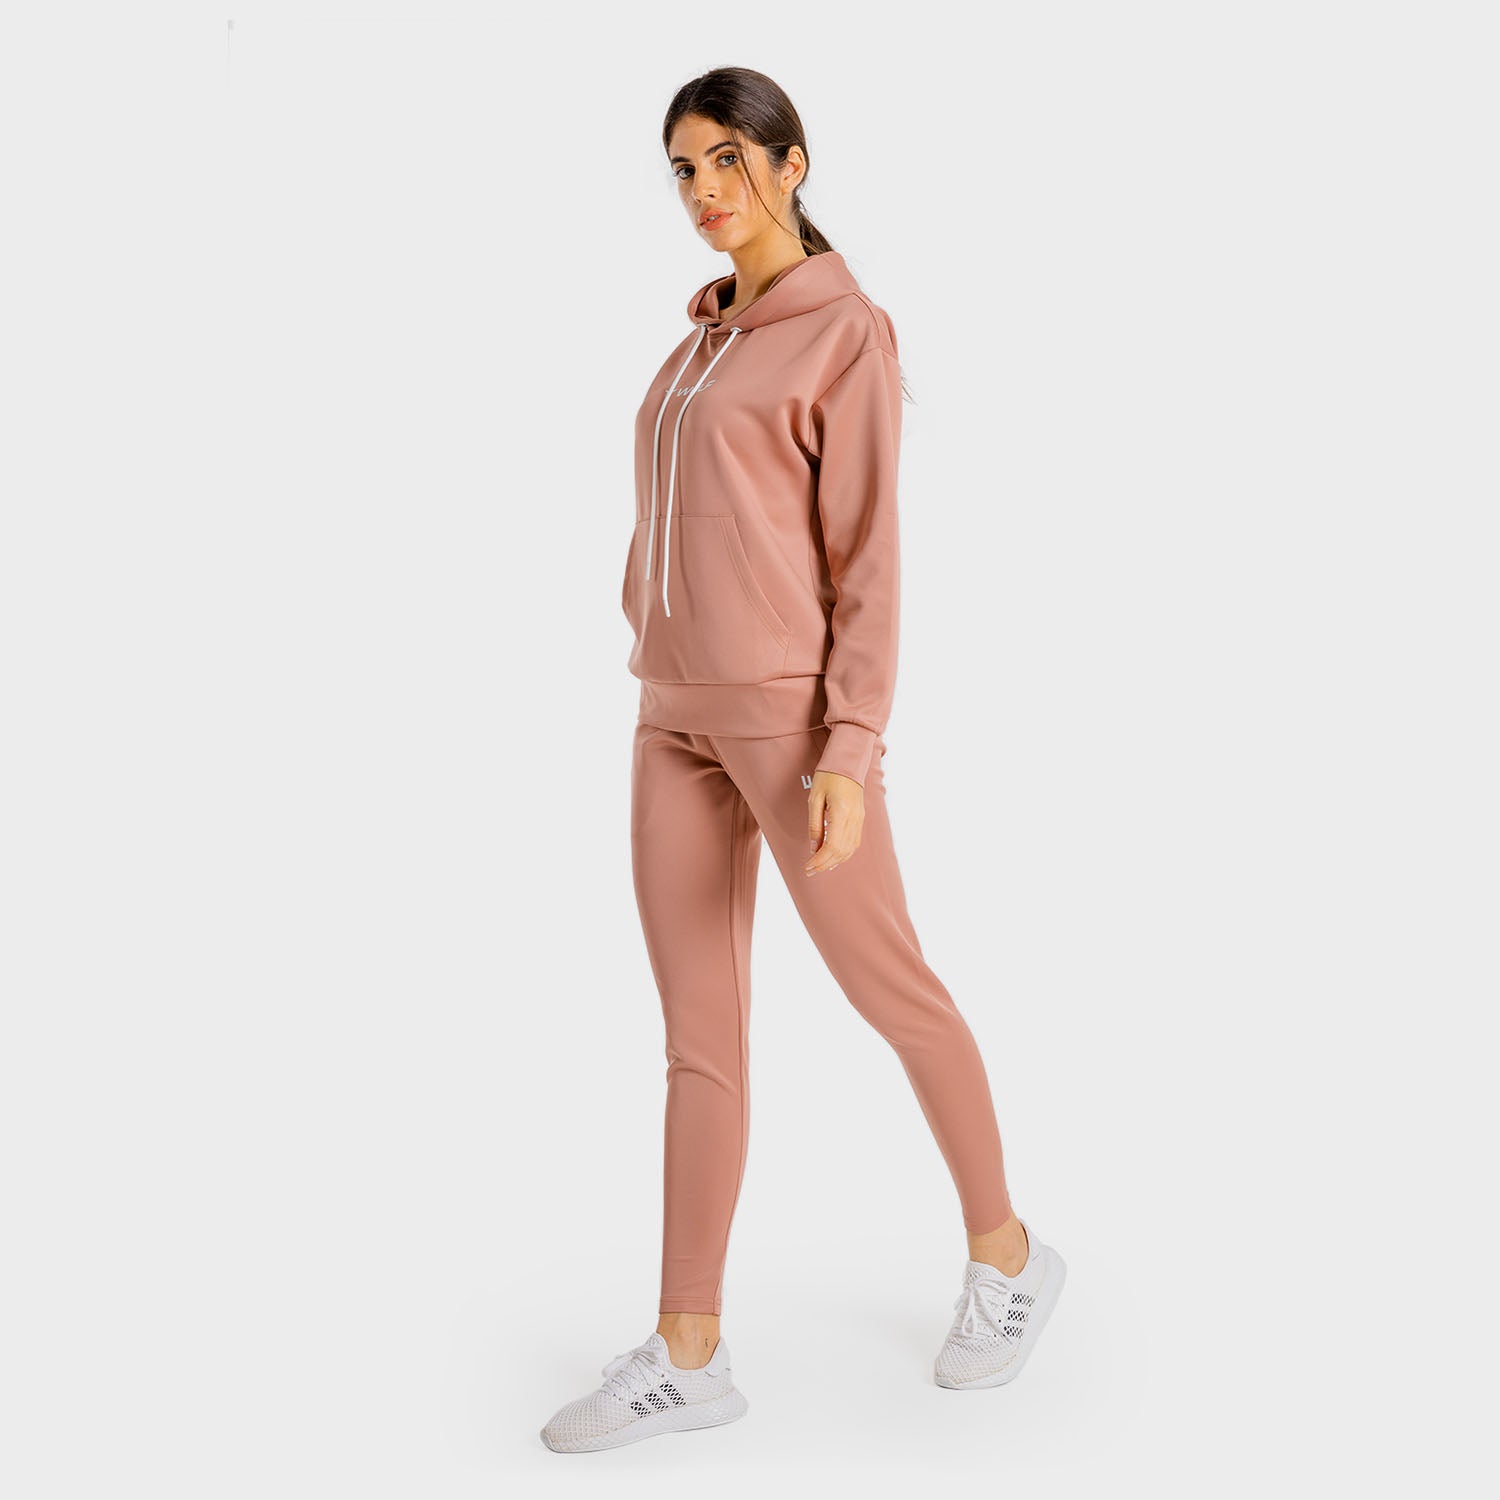 squatwolf-gym-hoodies-women-primal-hoddie-pink-dusty-workout-clothes